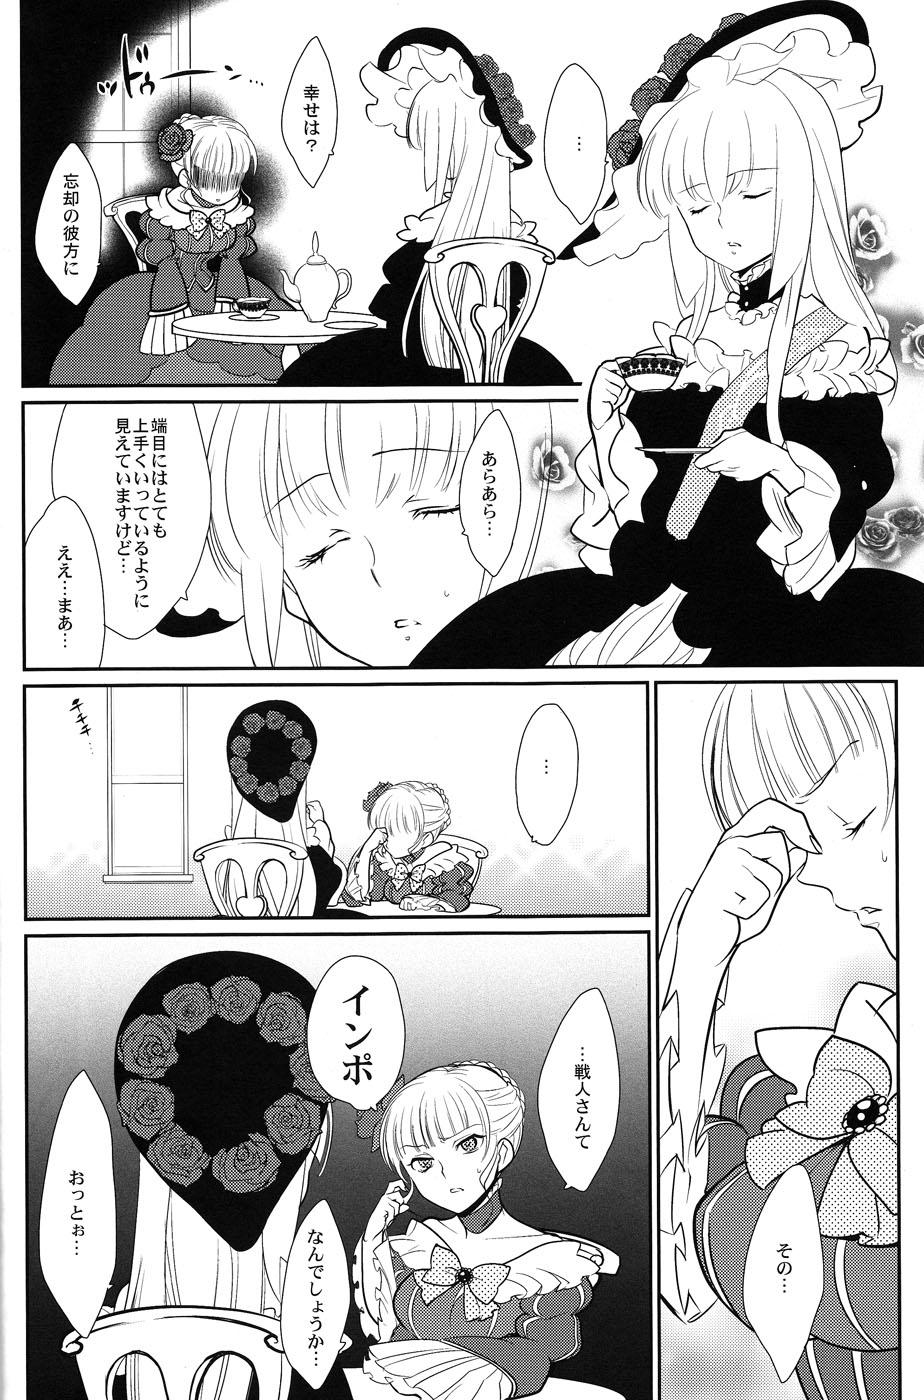 Kissing Shinkon - Umineko no naku koro ni 4some - Page 5